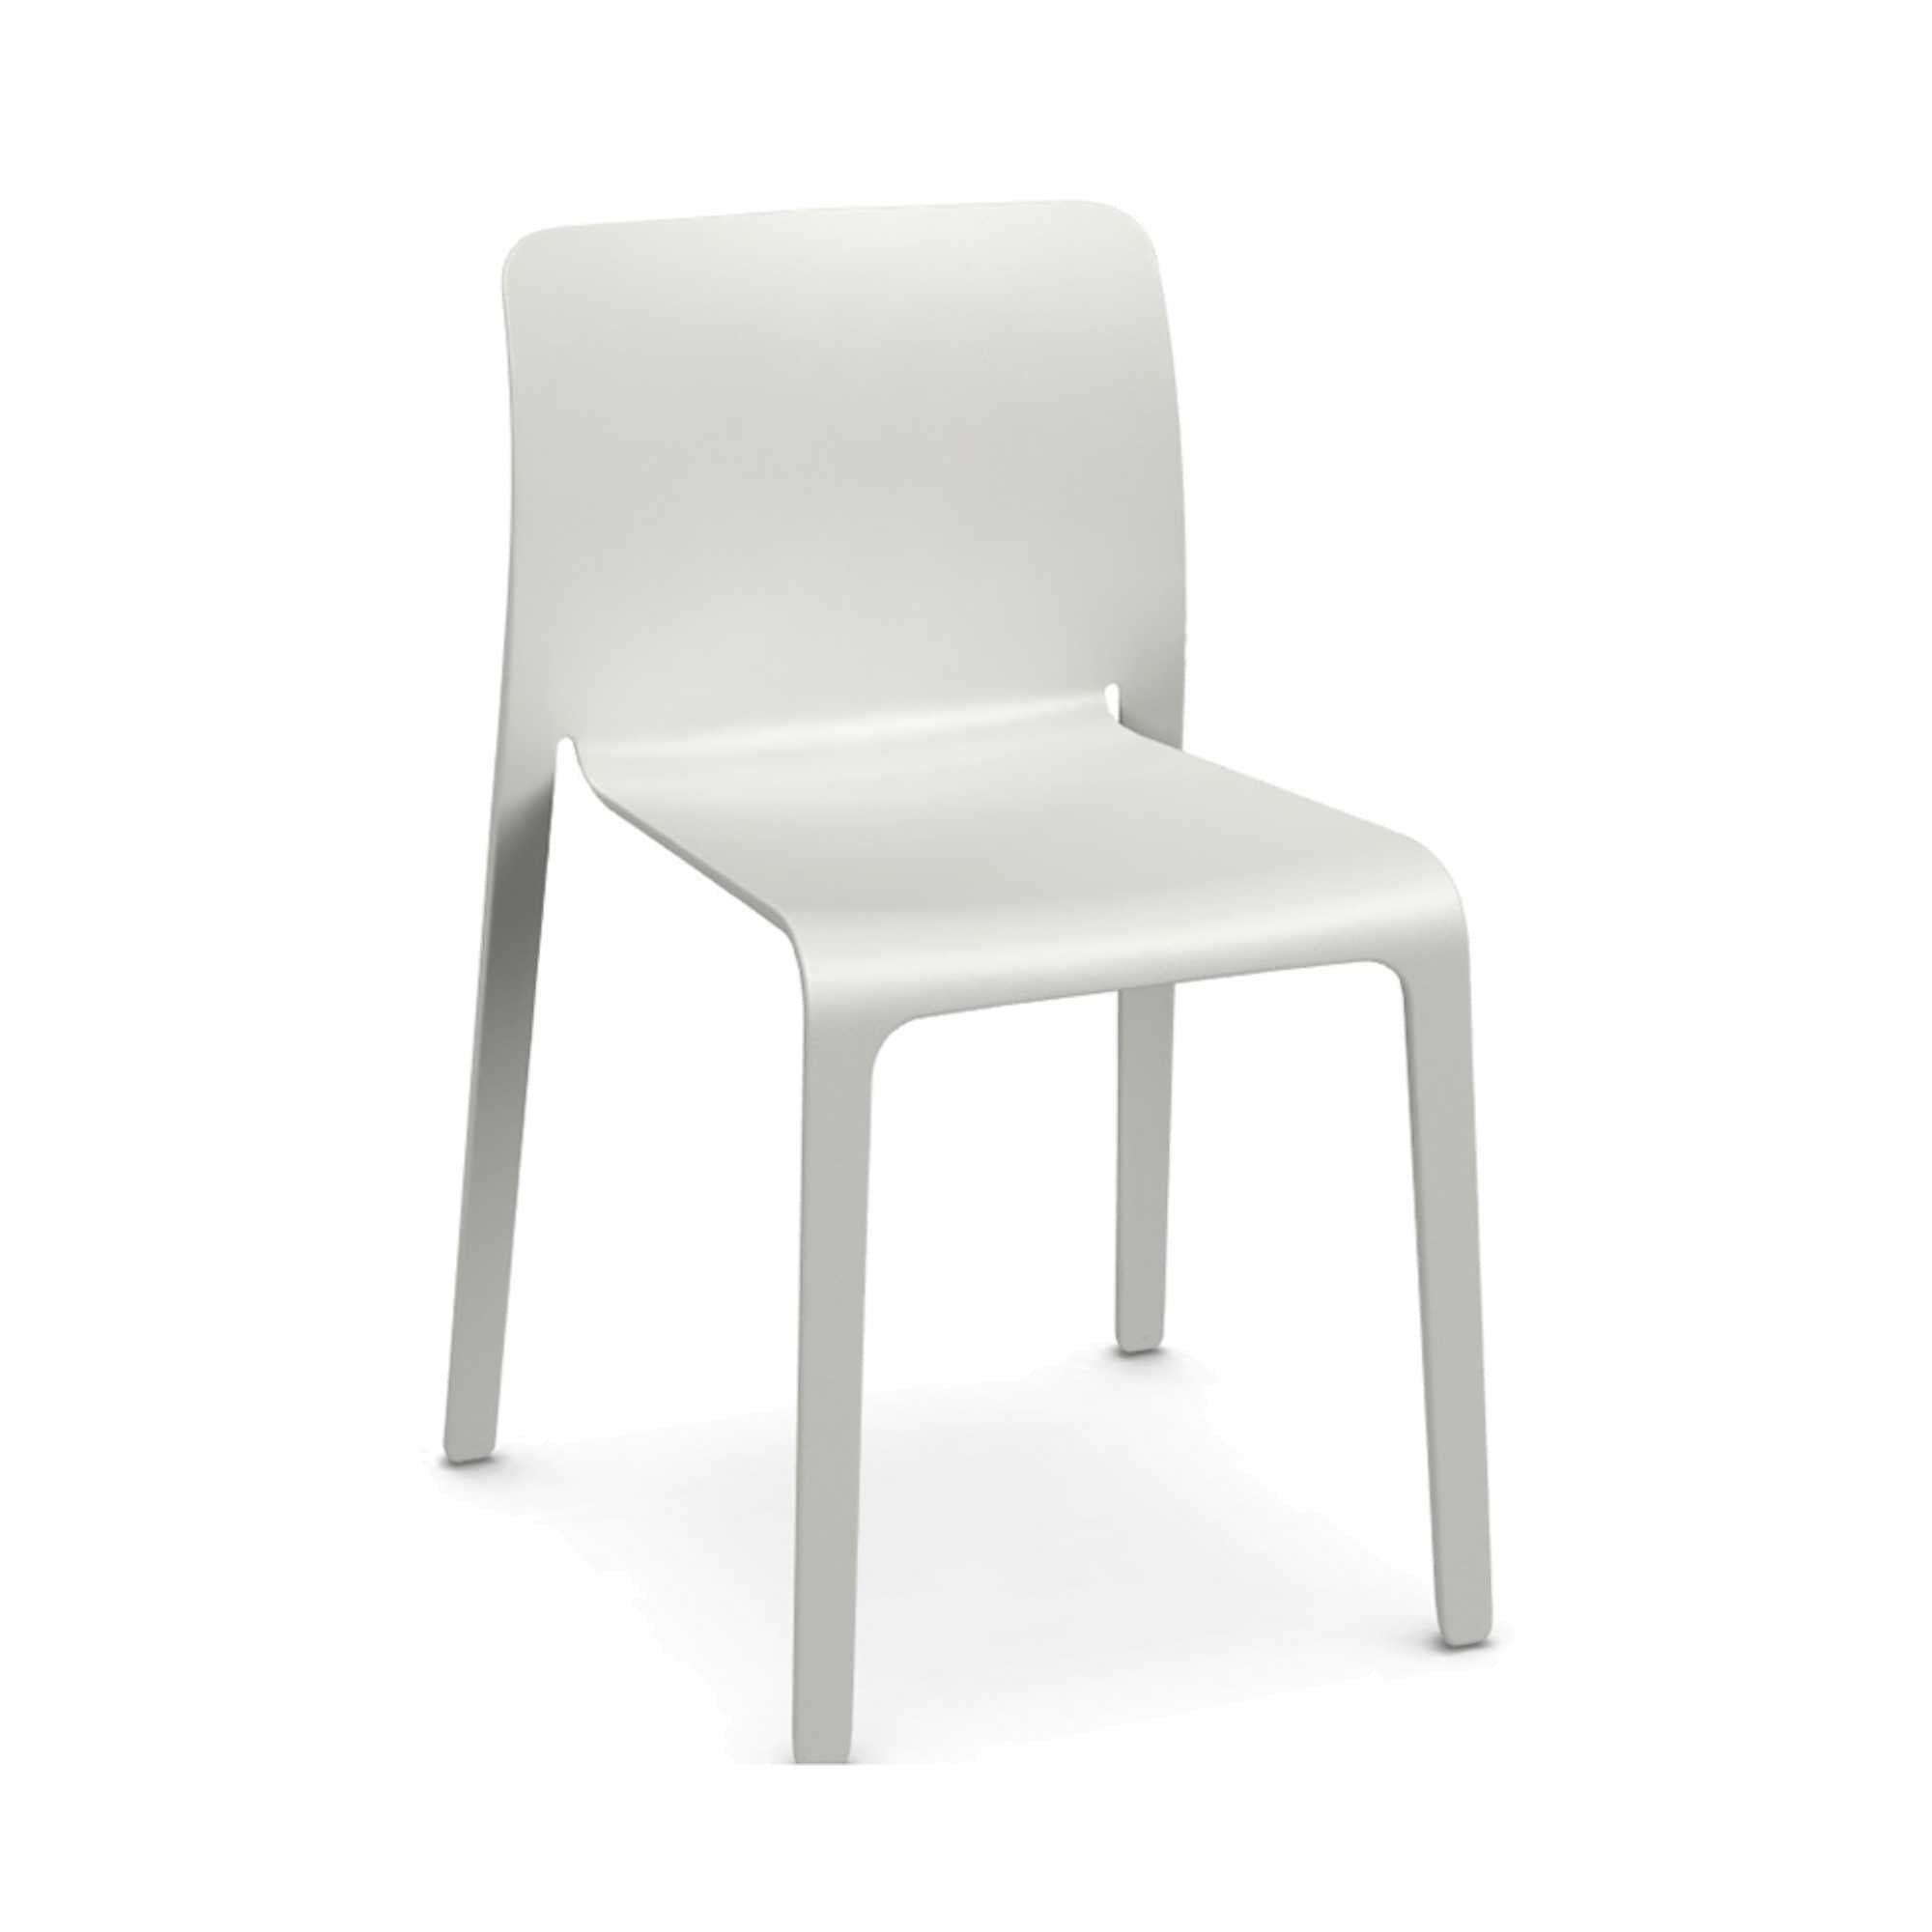 Magis First Chair, White